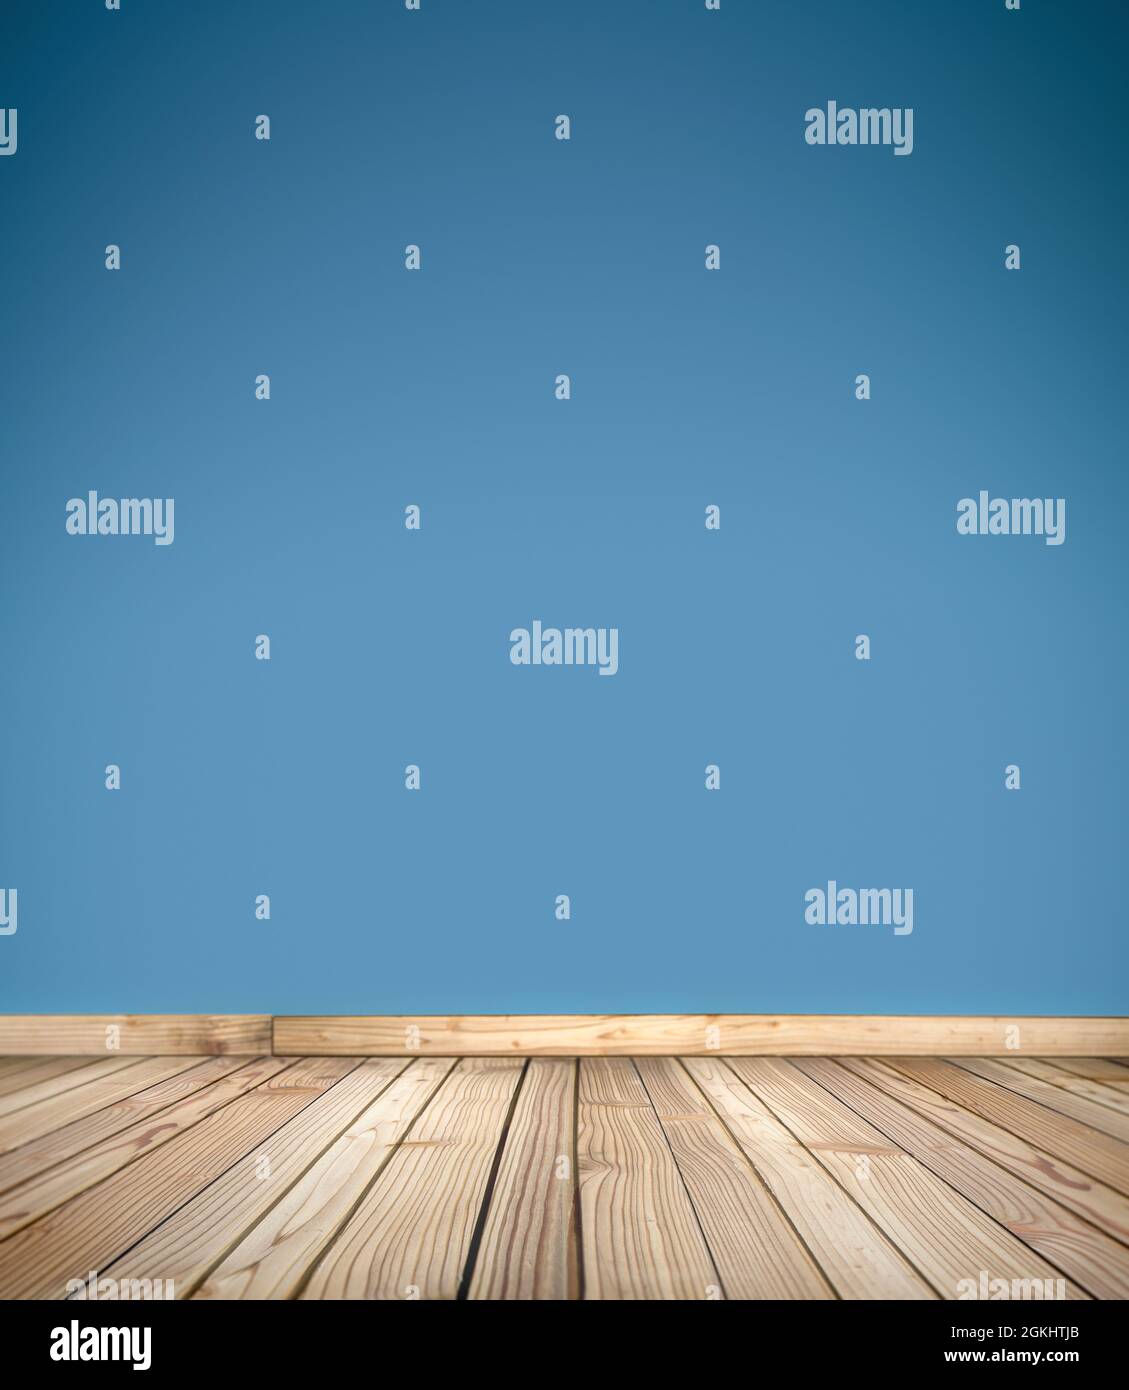 Holzdecksbühne für Produkte, Dinge und Menschen. Leerer rustikaler Holzboden, Plattform mit unscharfem hellblauen Wandhintergrund. Mit Kopierbereich. Stockfoto